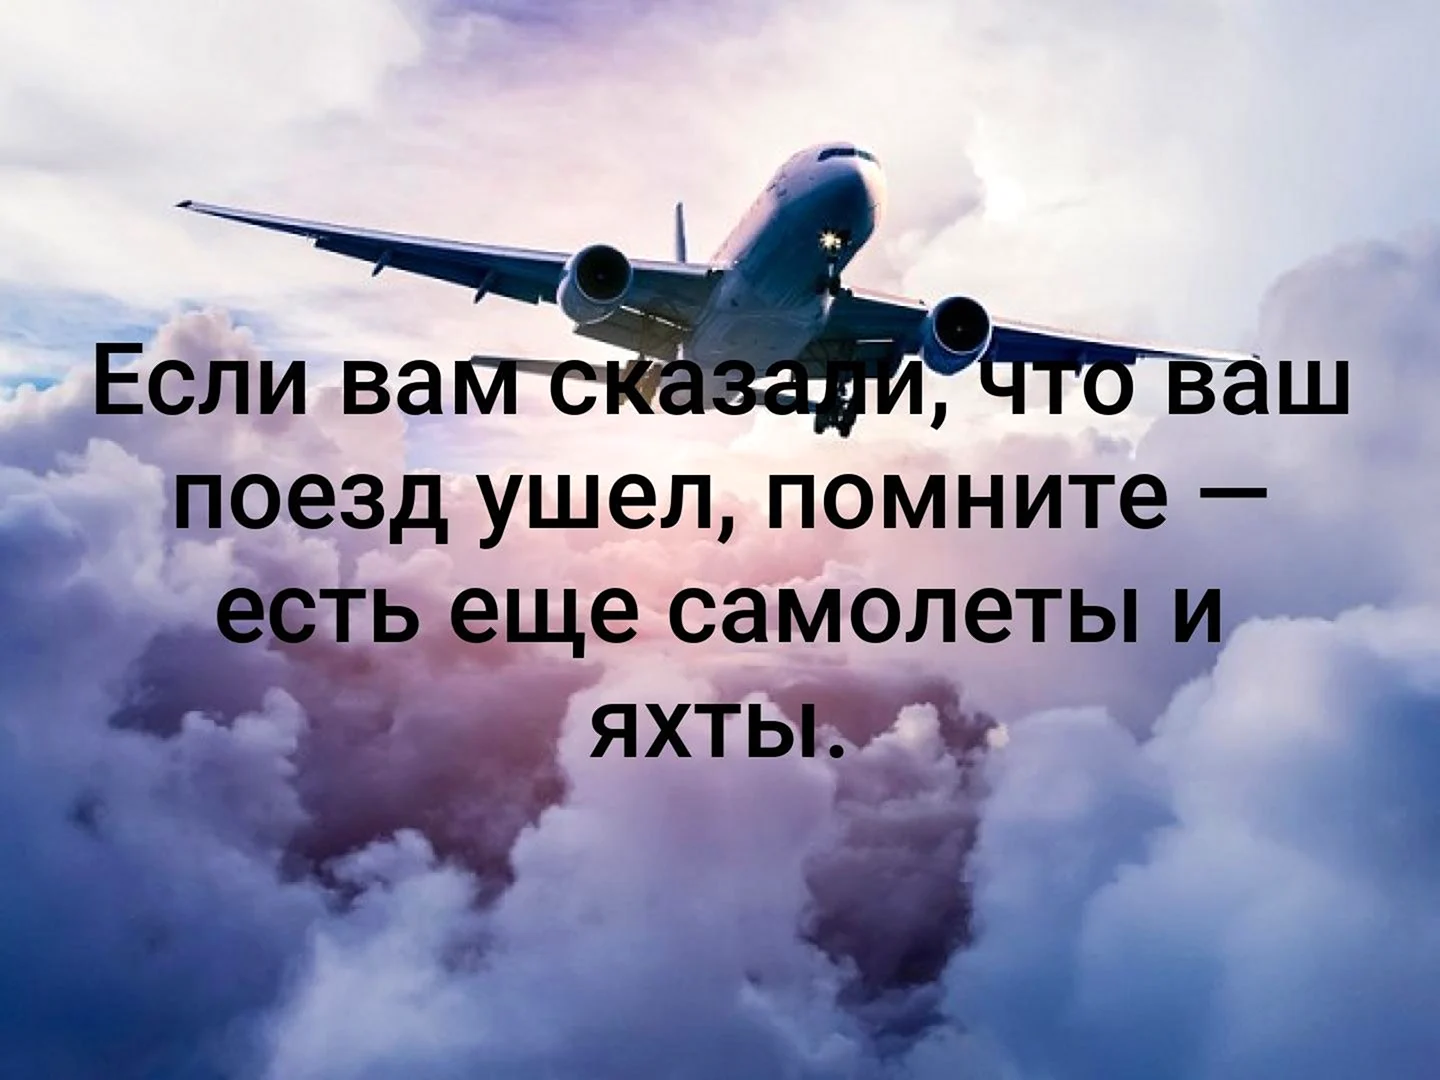 Андрей Туполев: «Я не пишу, а делаю»